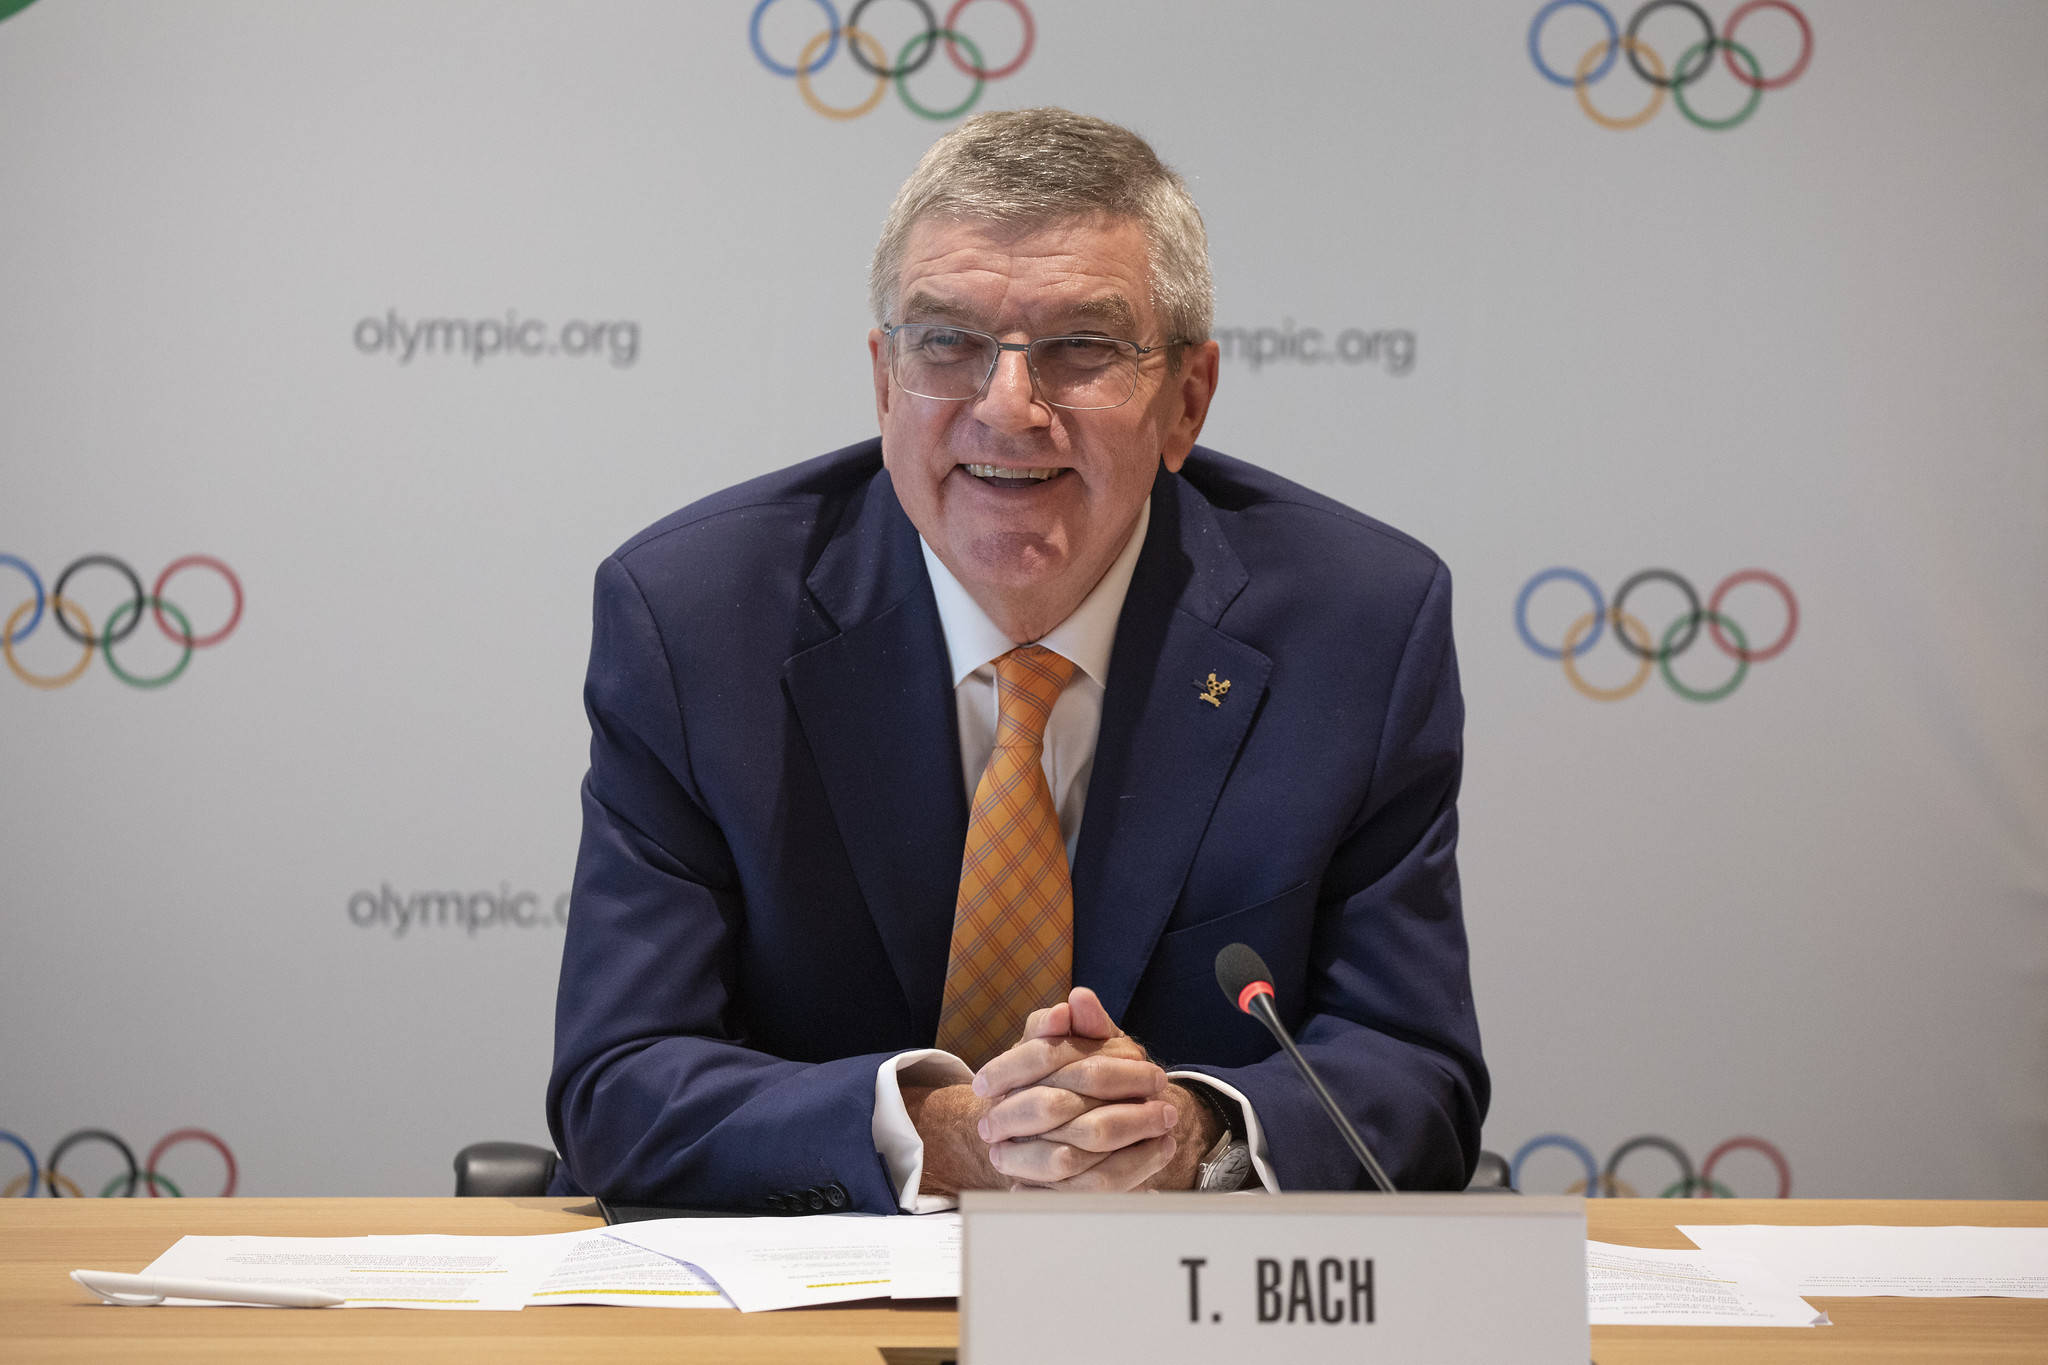 北京时间10月13日,国际奥委会(ioc)主席托马斯-巴赫向2020年东京奥运